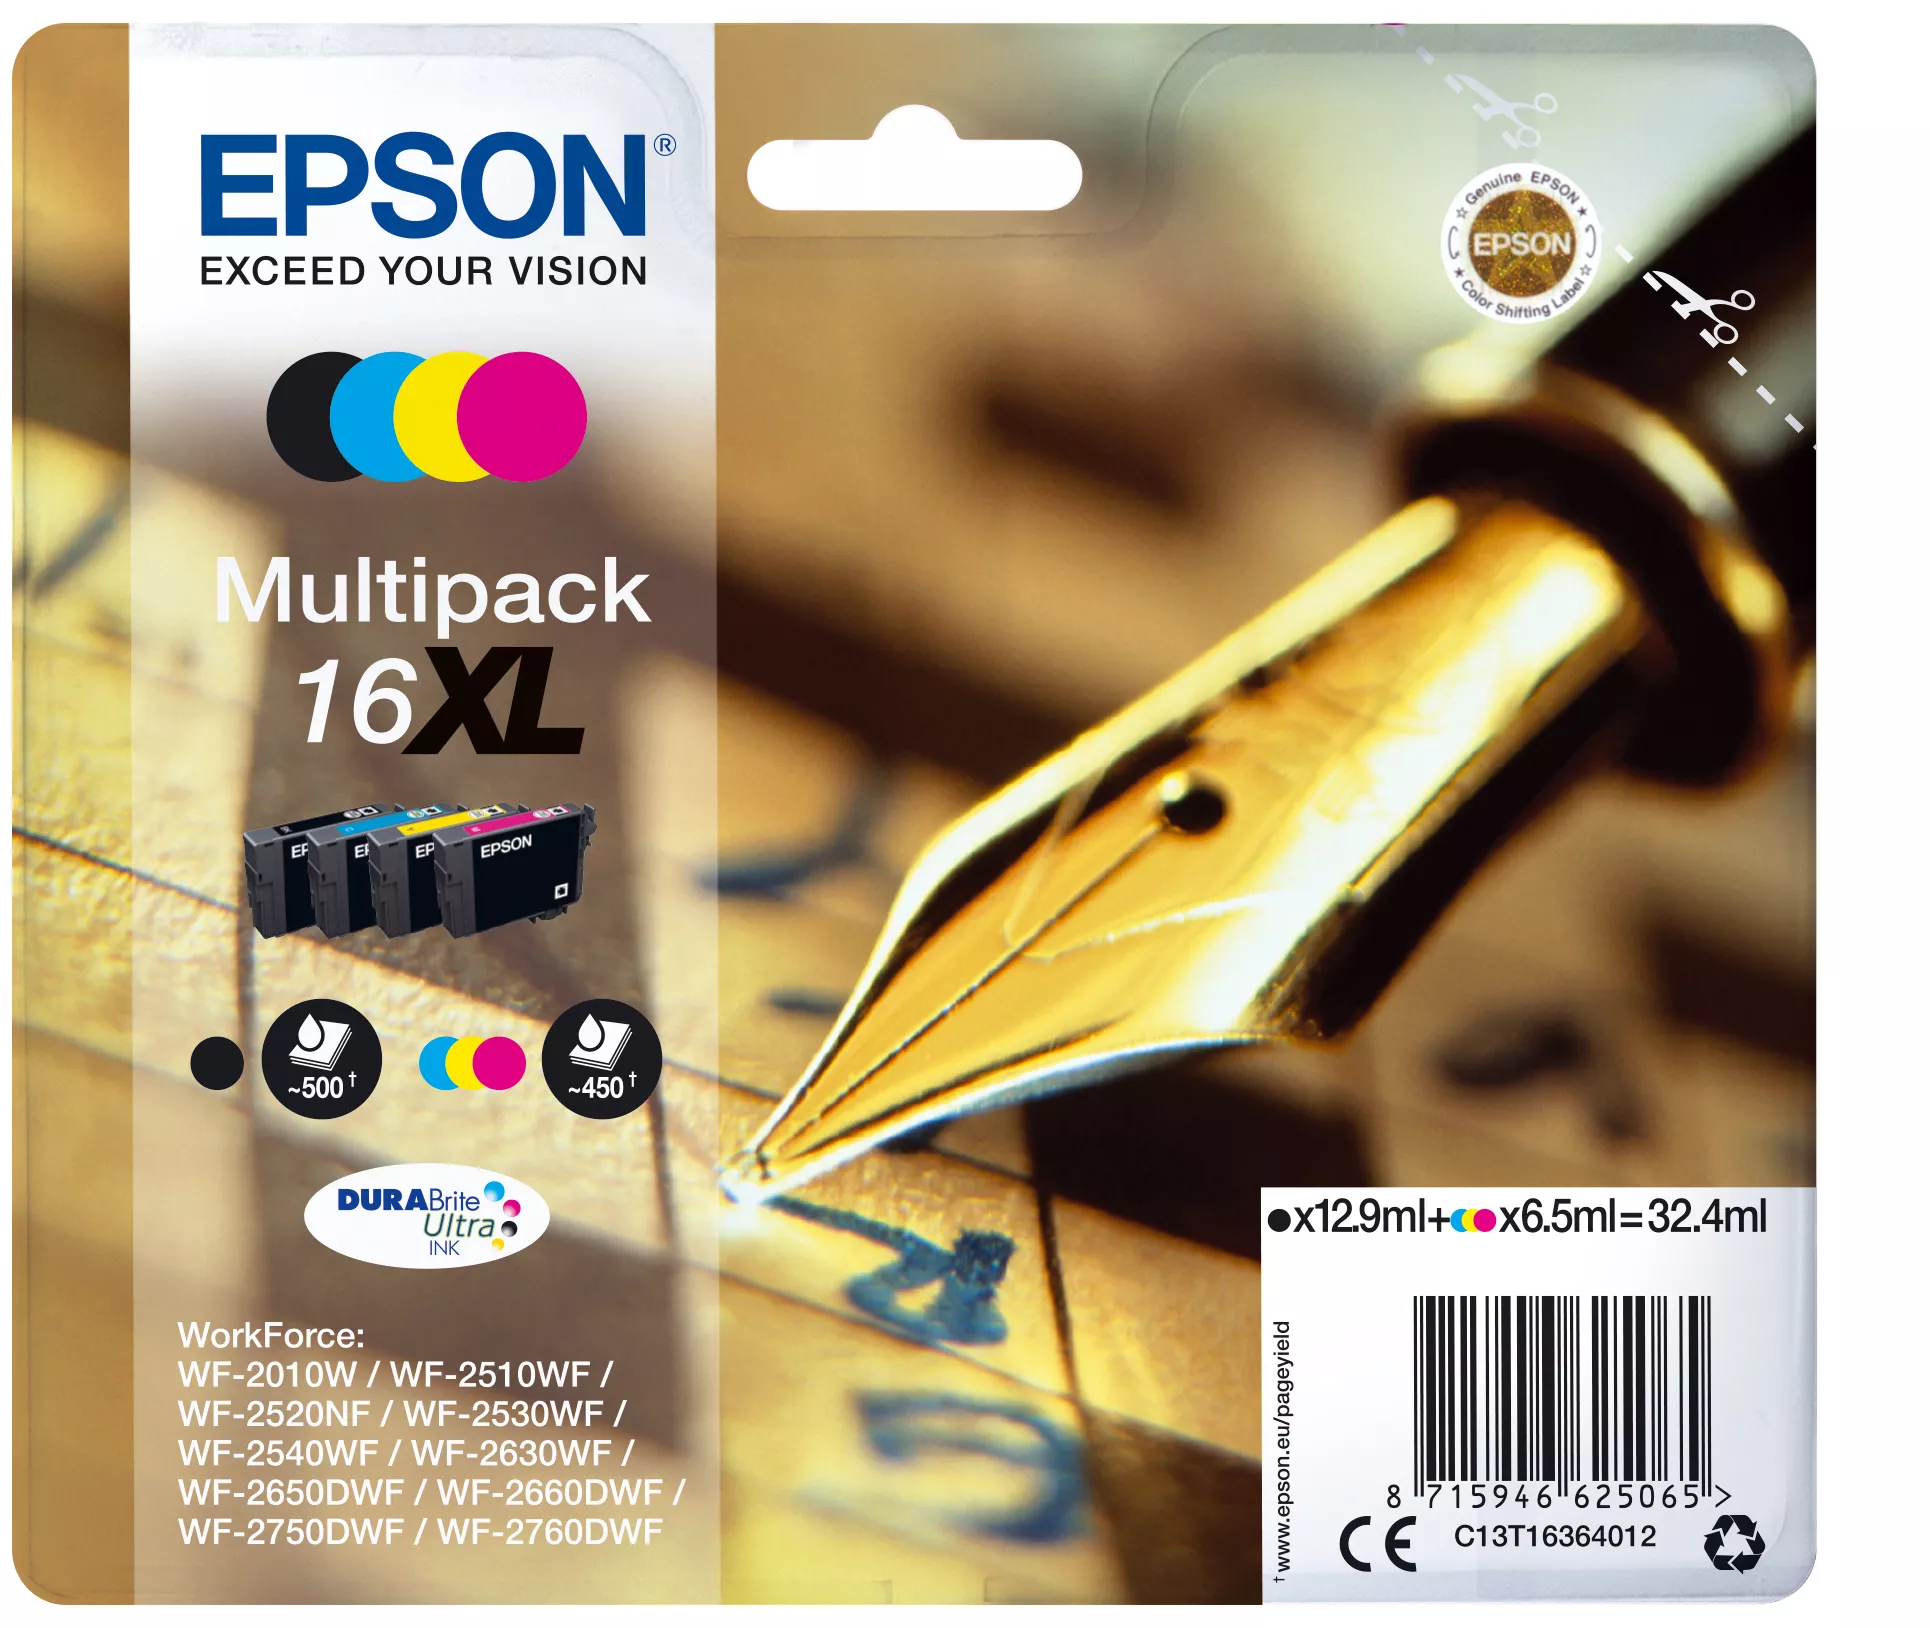 Achat EPSON 16XL cartouche encre noir et tricolore haute capacité au meilleur prix